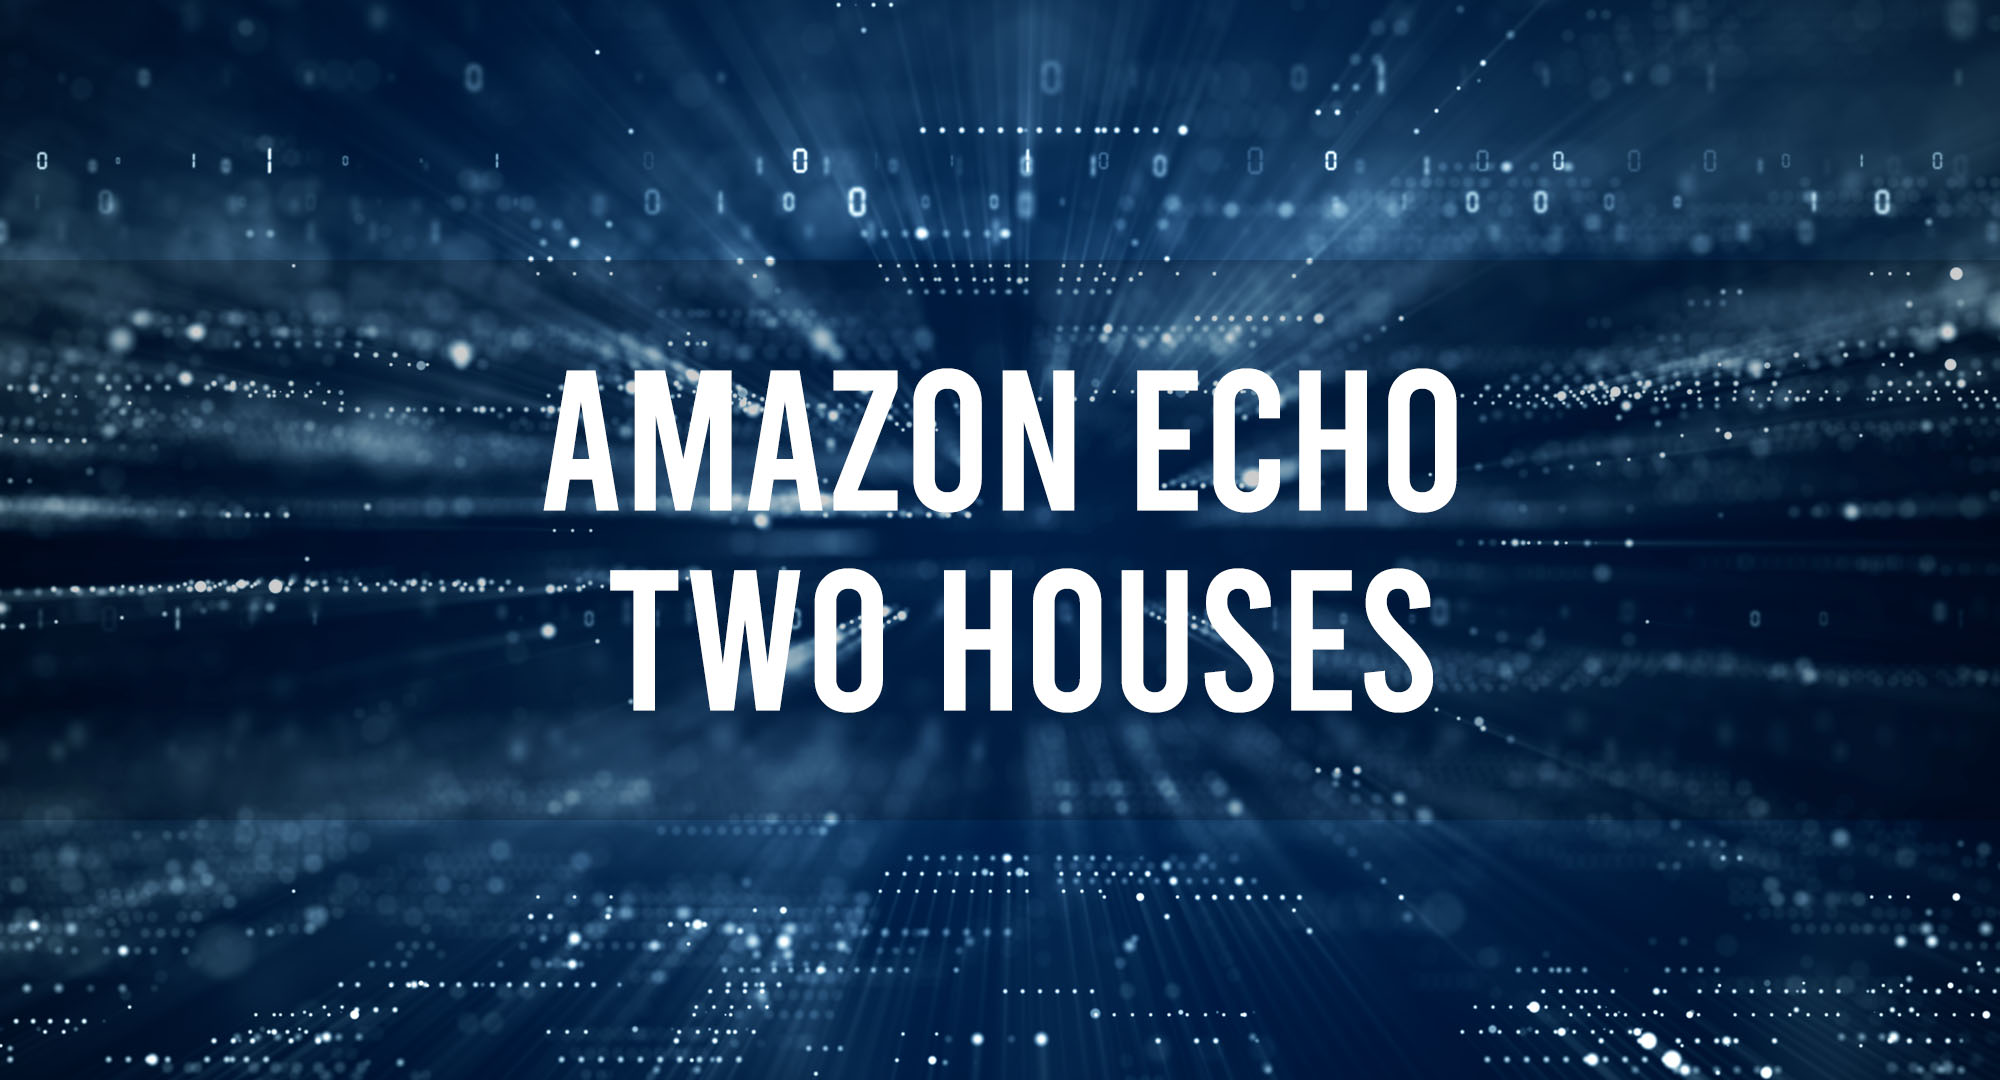 Amazon Echo Two Houses